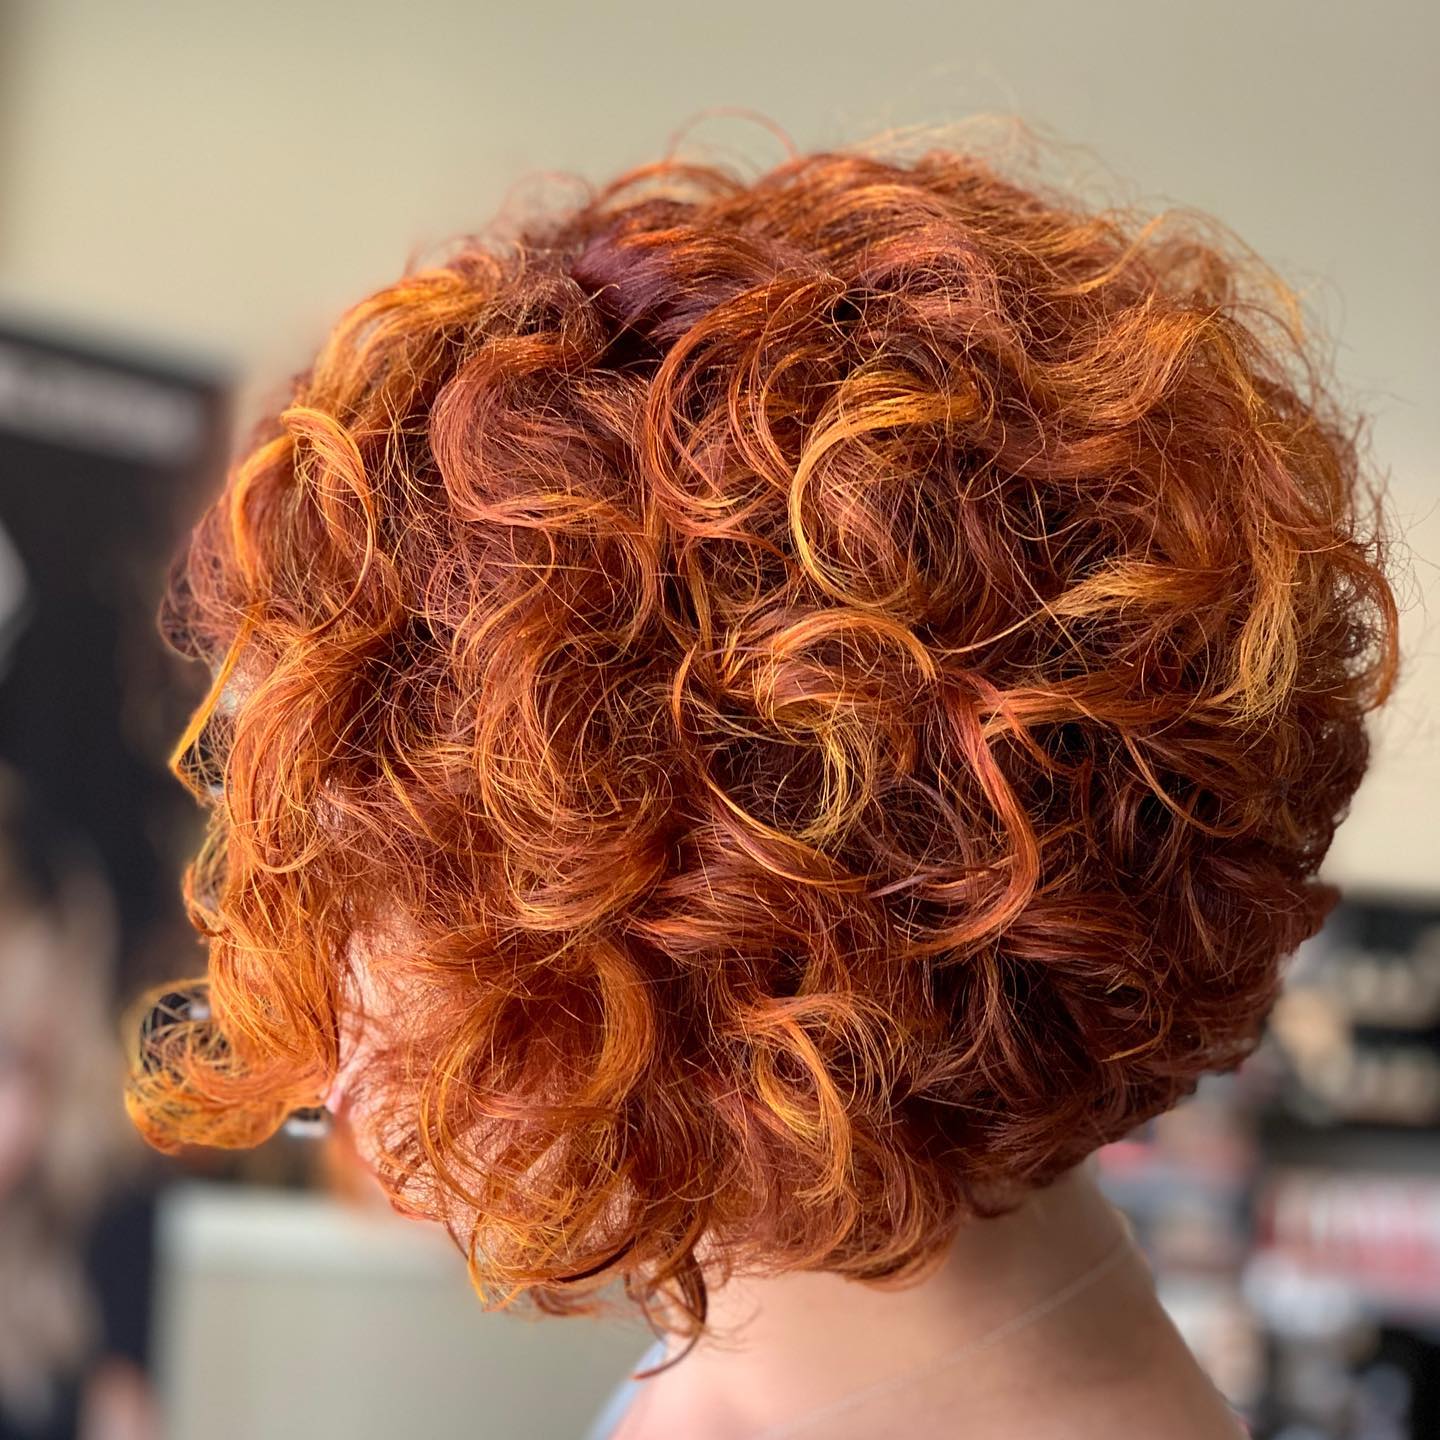 Redhead natural curls bright and fun short haircut - Milwaukee's Best Hair Salon - veronica's hair studio